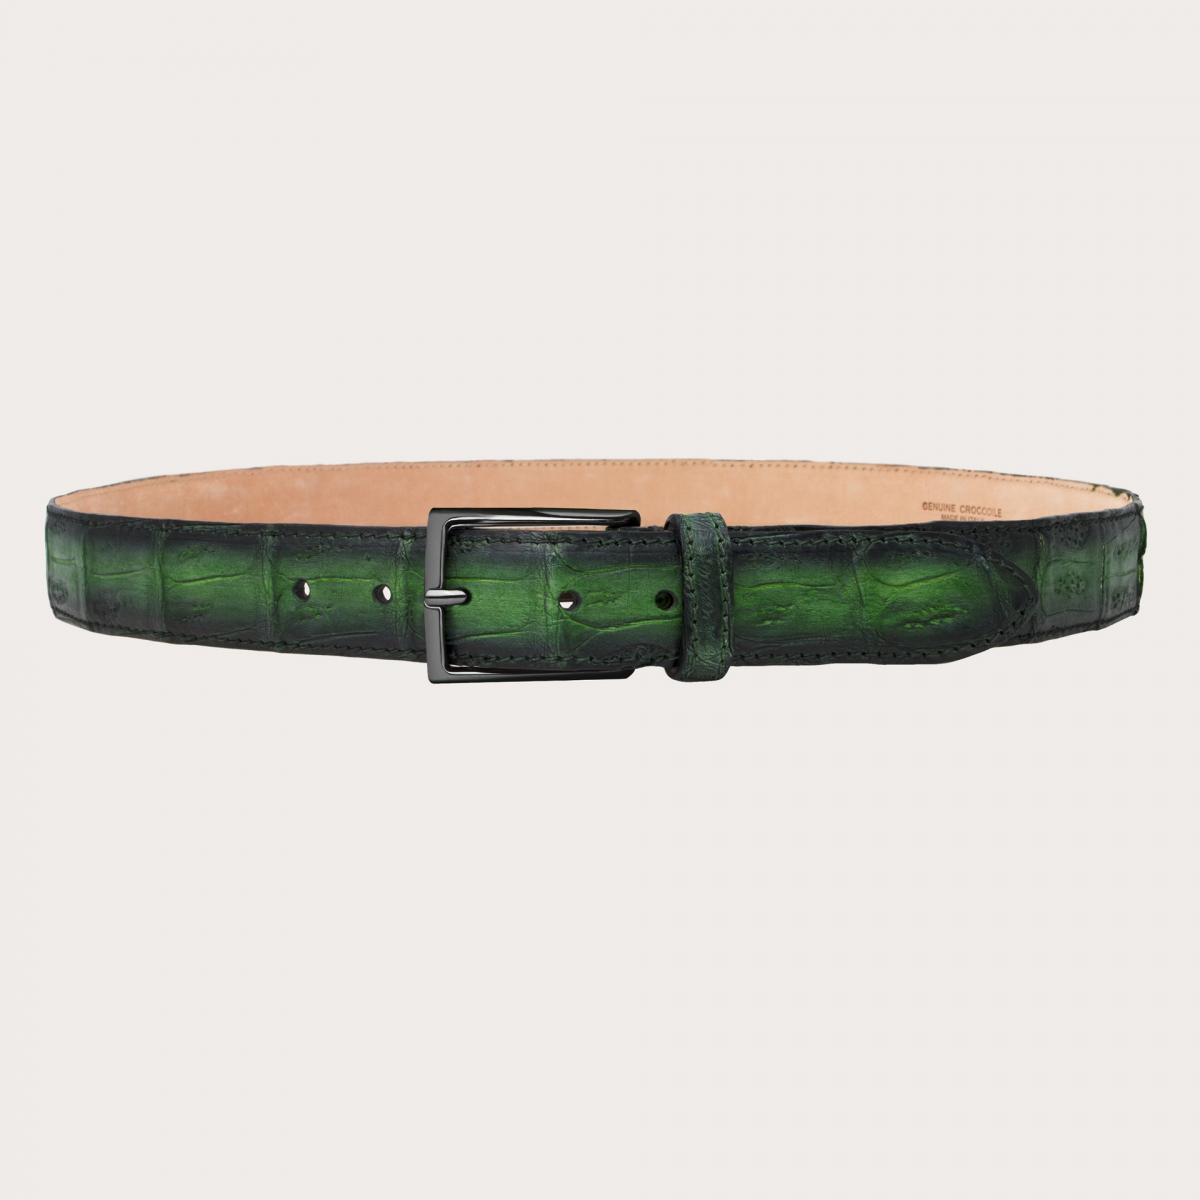 BRUCLE Elegante cinturón en cola de cocodrilo sin níquel con pátina verde degradada